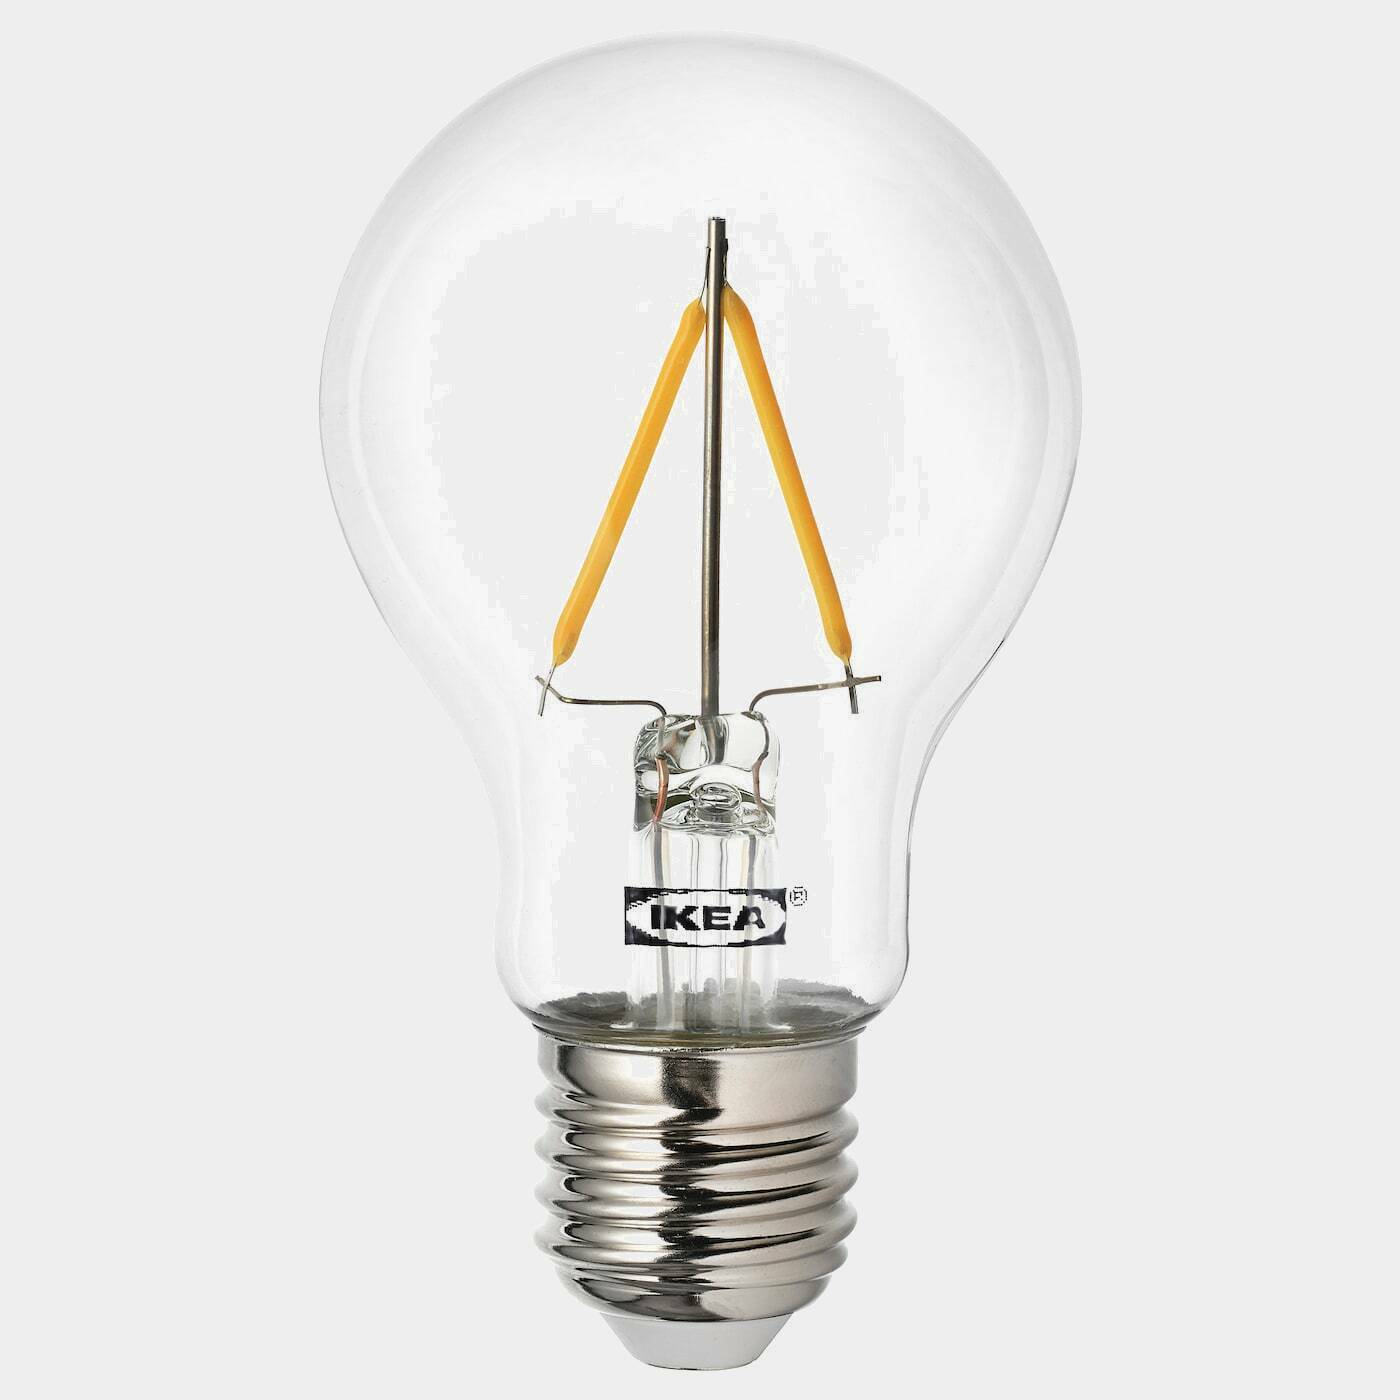 RYET LED-Leuchtmittel E27 100 lm  -  - Beleuchtung Ideen für dein Zuhause von Home Trends. Beleuchtung Trends von Social Media Influencer für dein Skandi Zuhause.